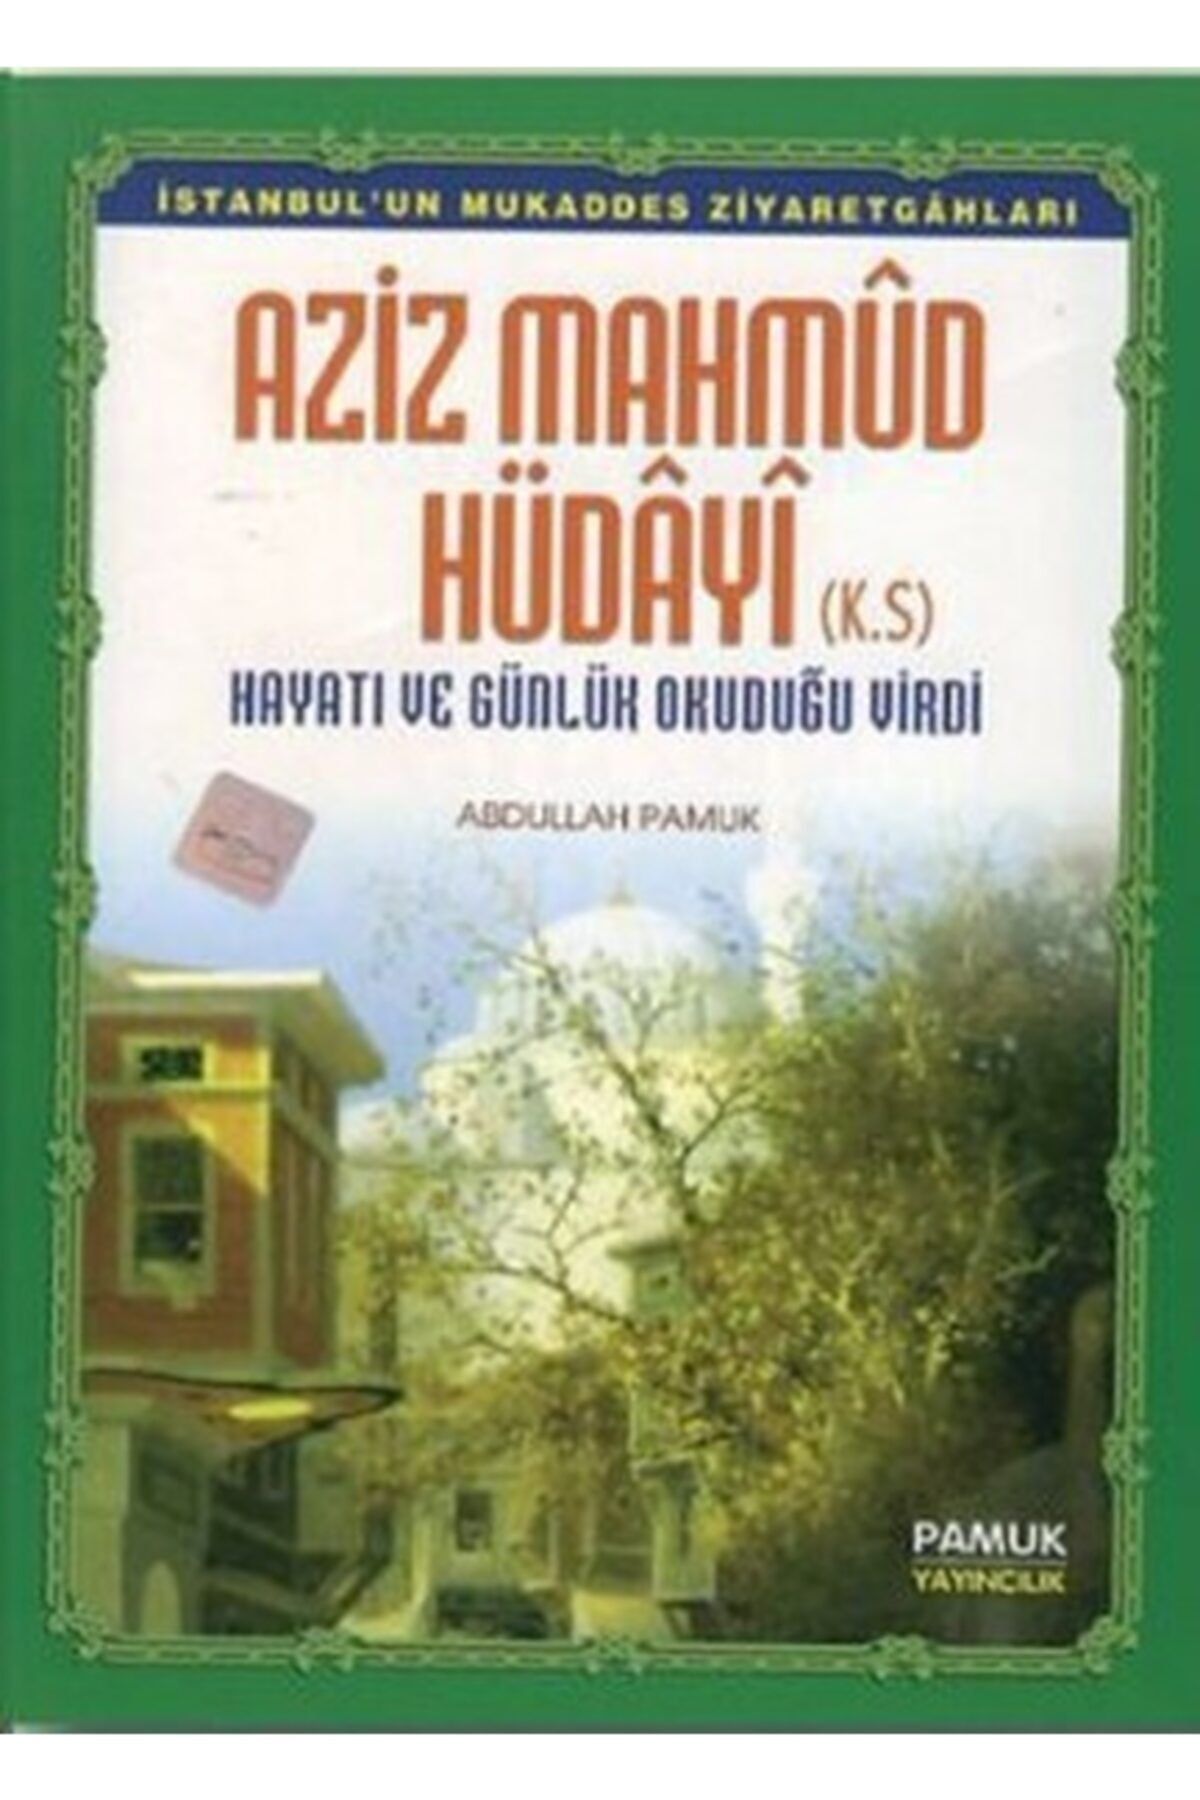 Pamuk Yayıncılık Azizi Mahmud Hüdayi (evliya-012/p13)